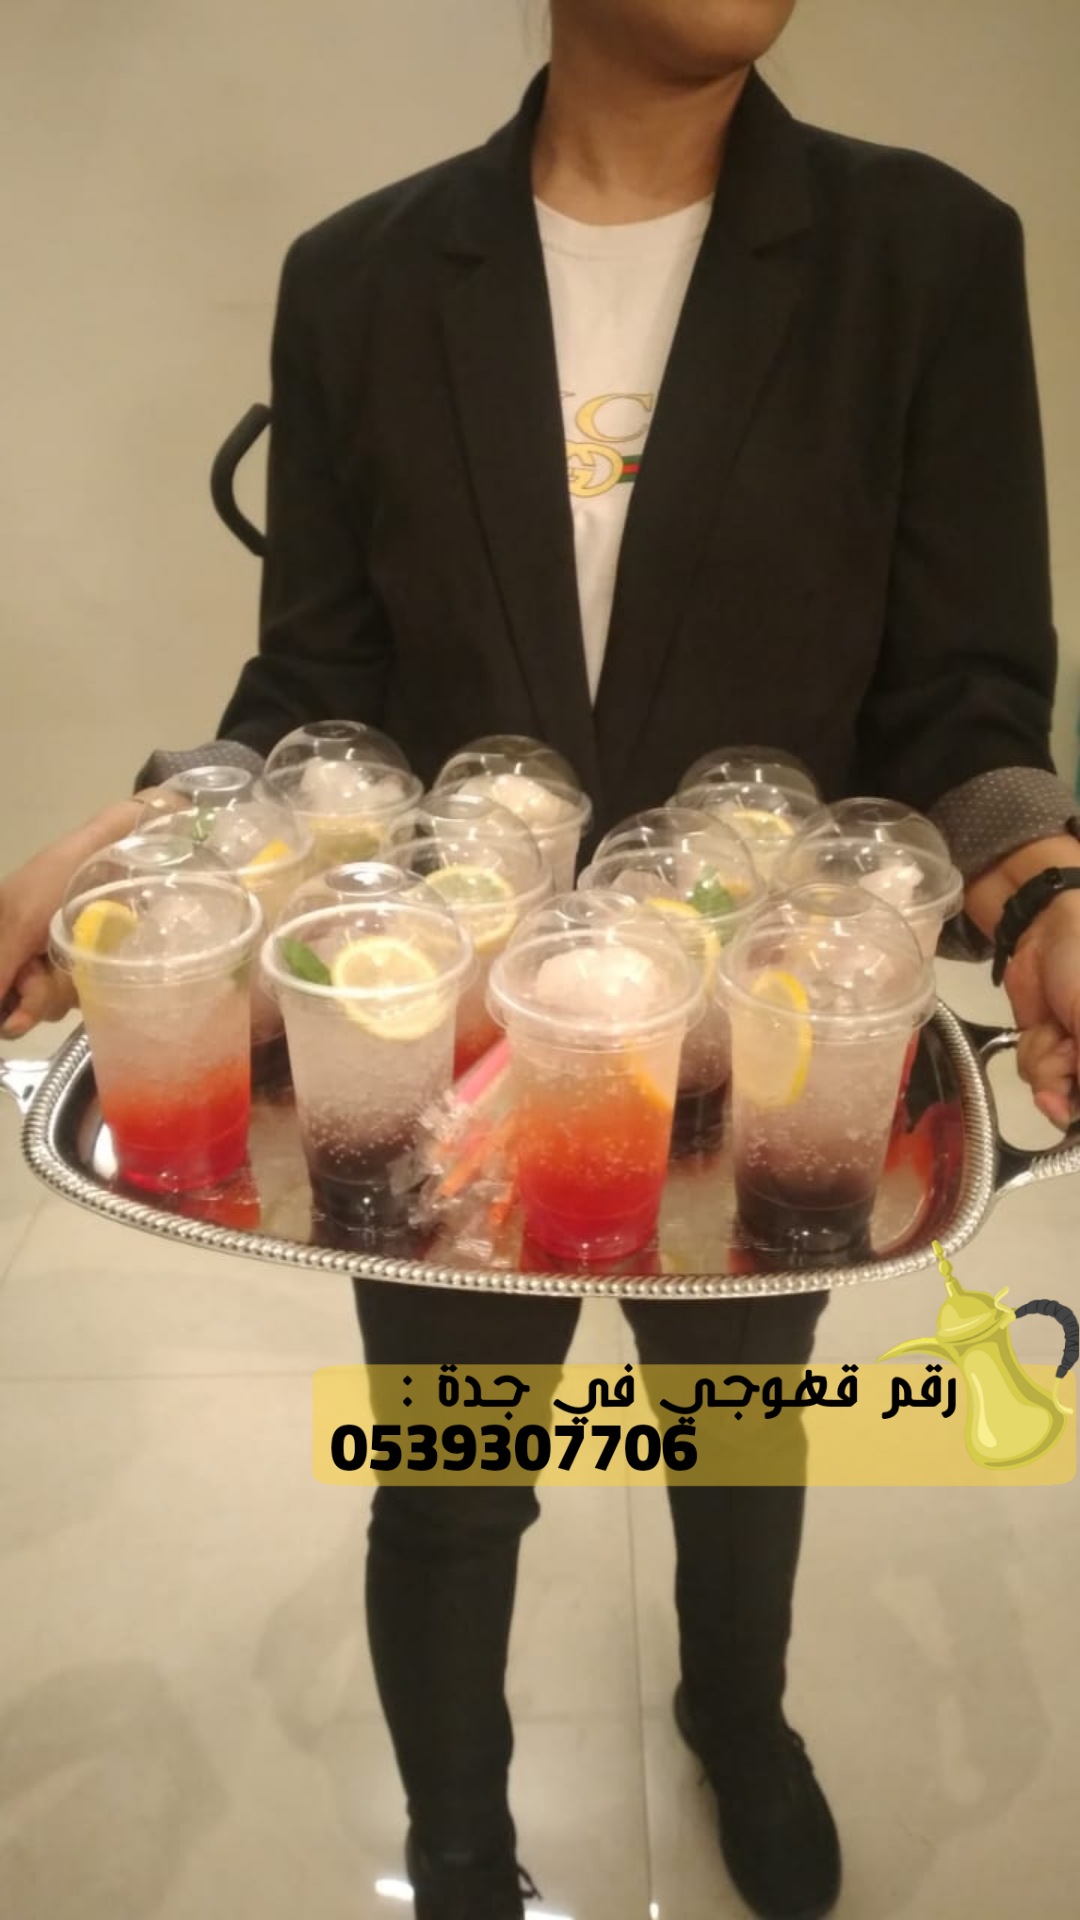 خدمات ضيافه قهوجي في جدة,0539307706 P_2857lnypt2